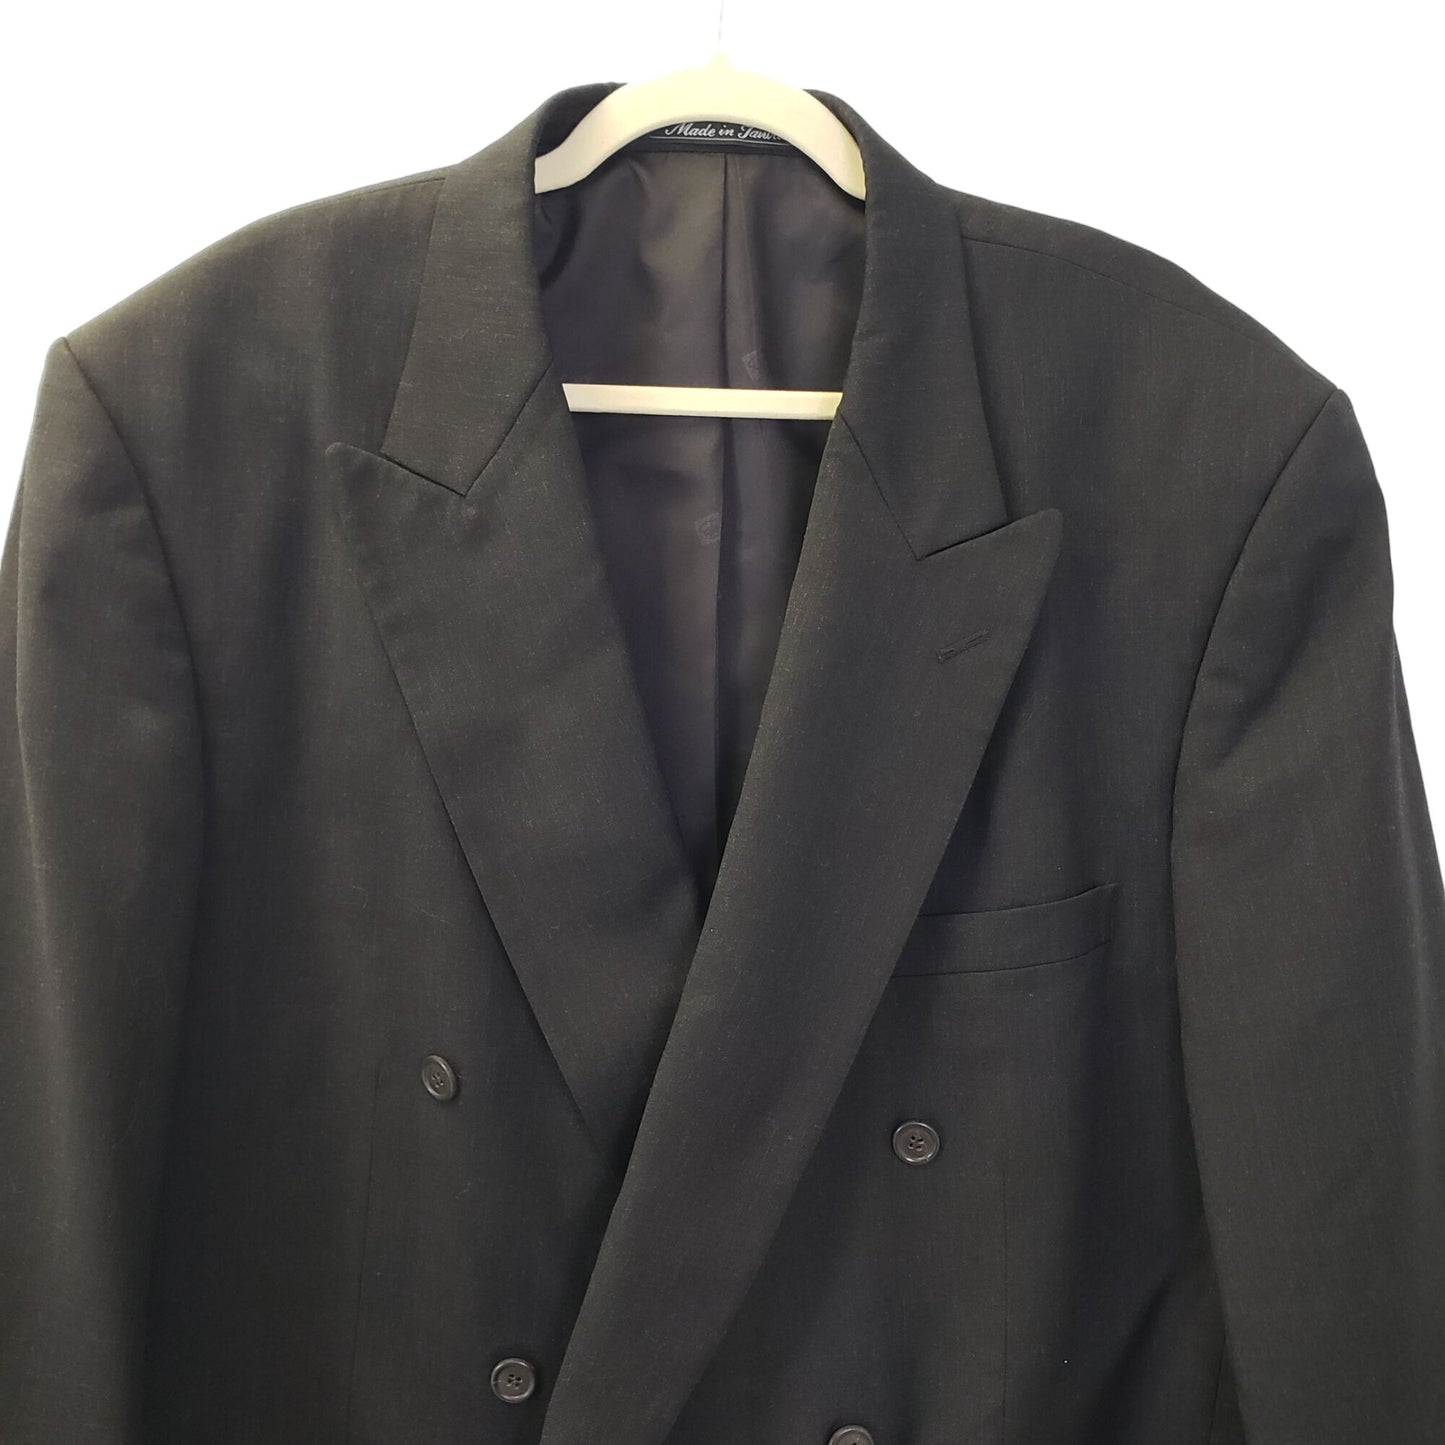 Pierre Balmain 100% Wool Double Breasted Sport Coat Blazer Size 50 Long